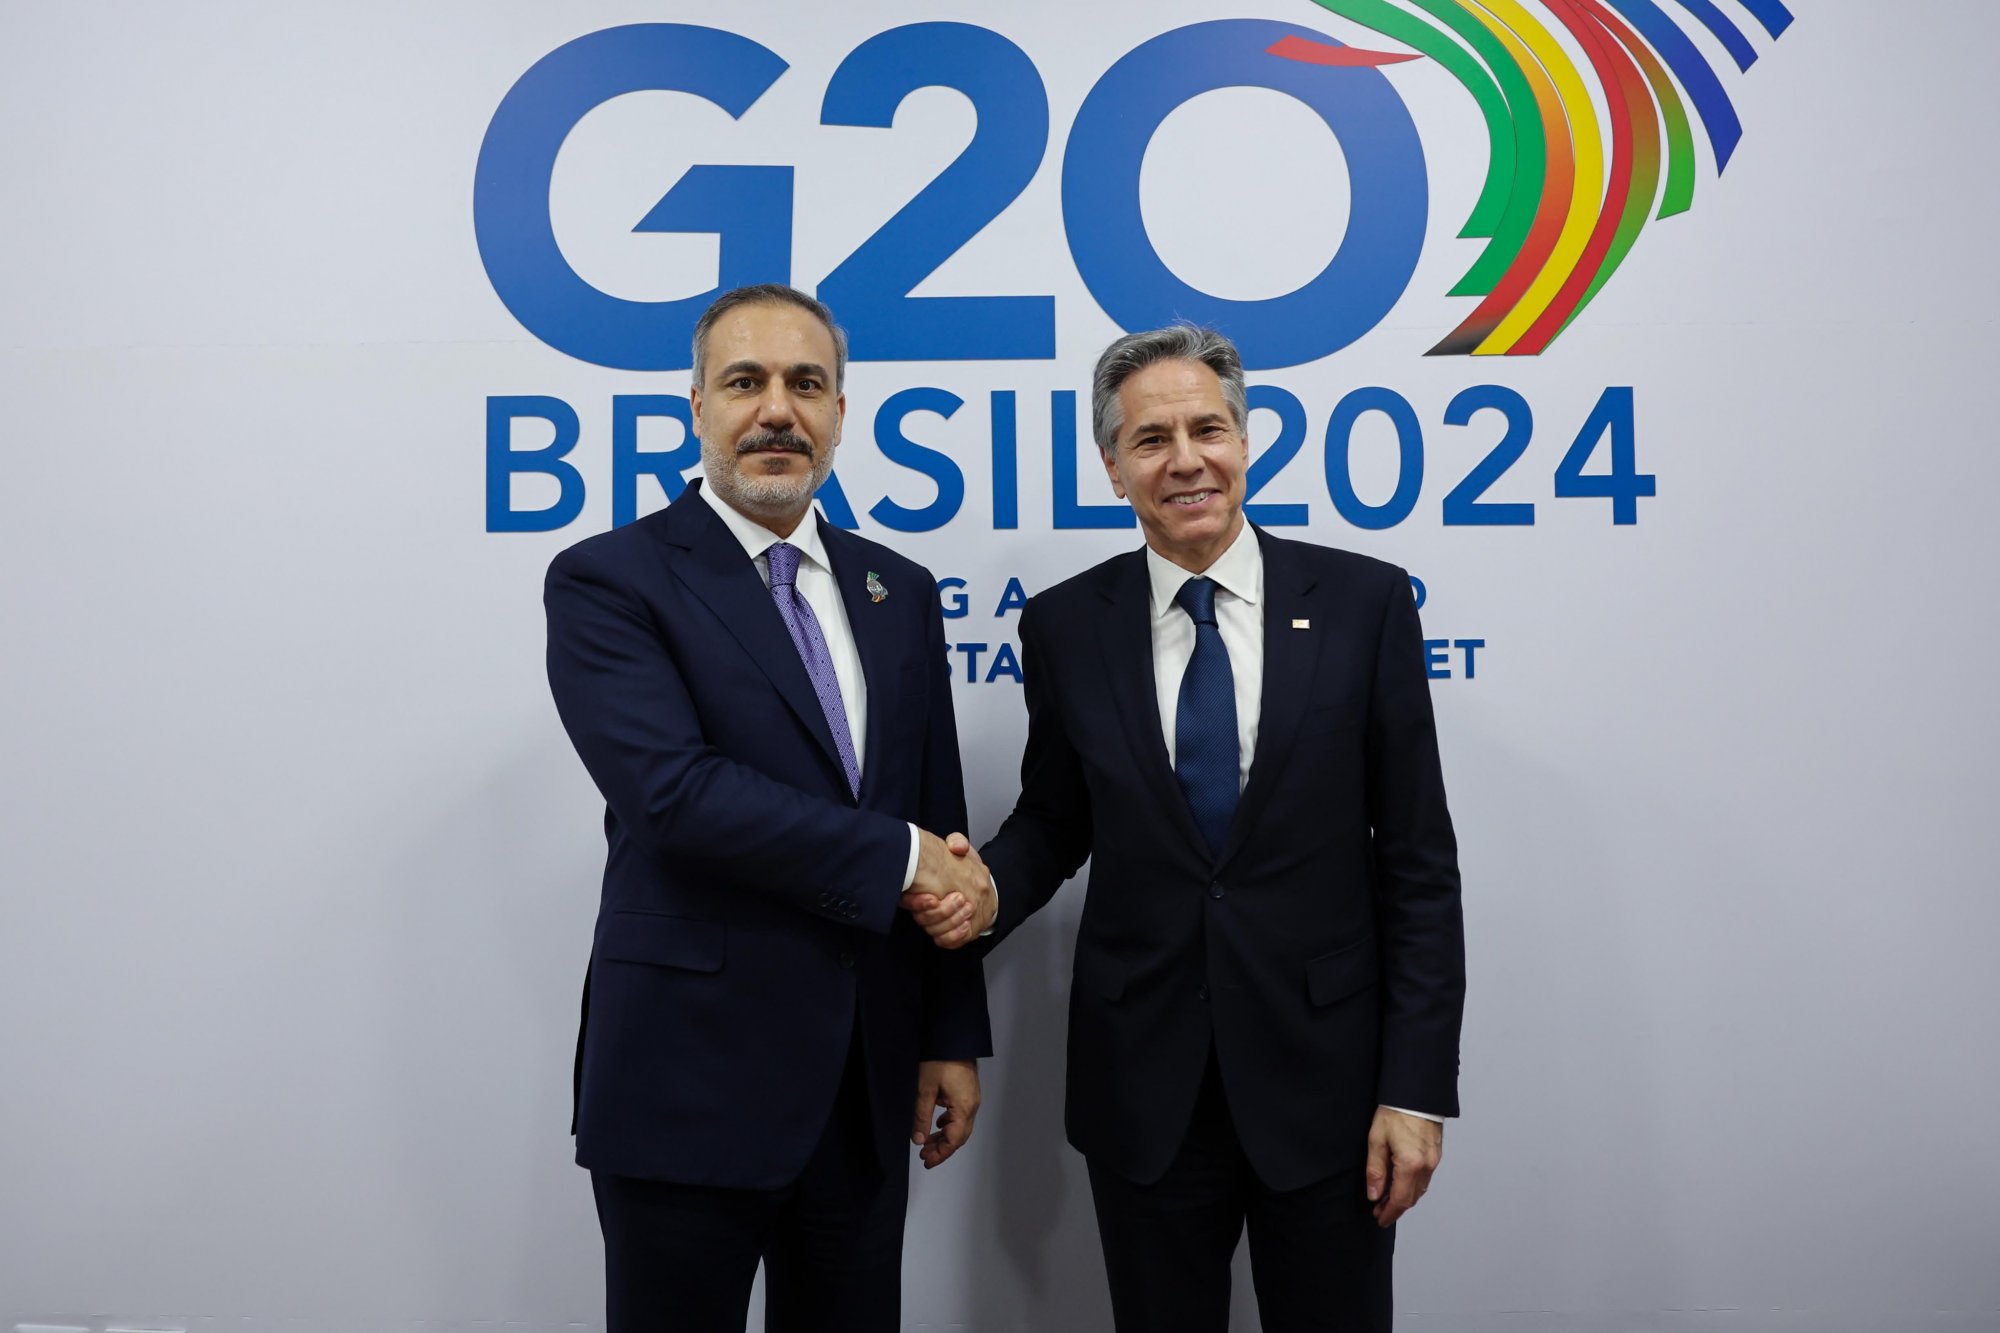 Τουρκία: Συνάντηση Φιντάν - Μπλίνκεν στο περιθώριο του G 20 στο Ρίο ντε Τζανέιρο